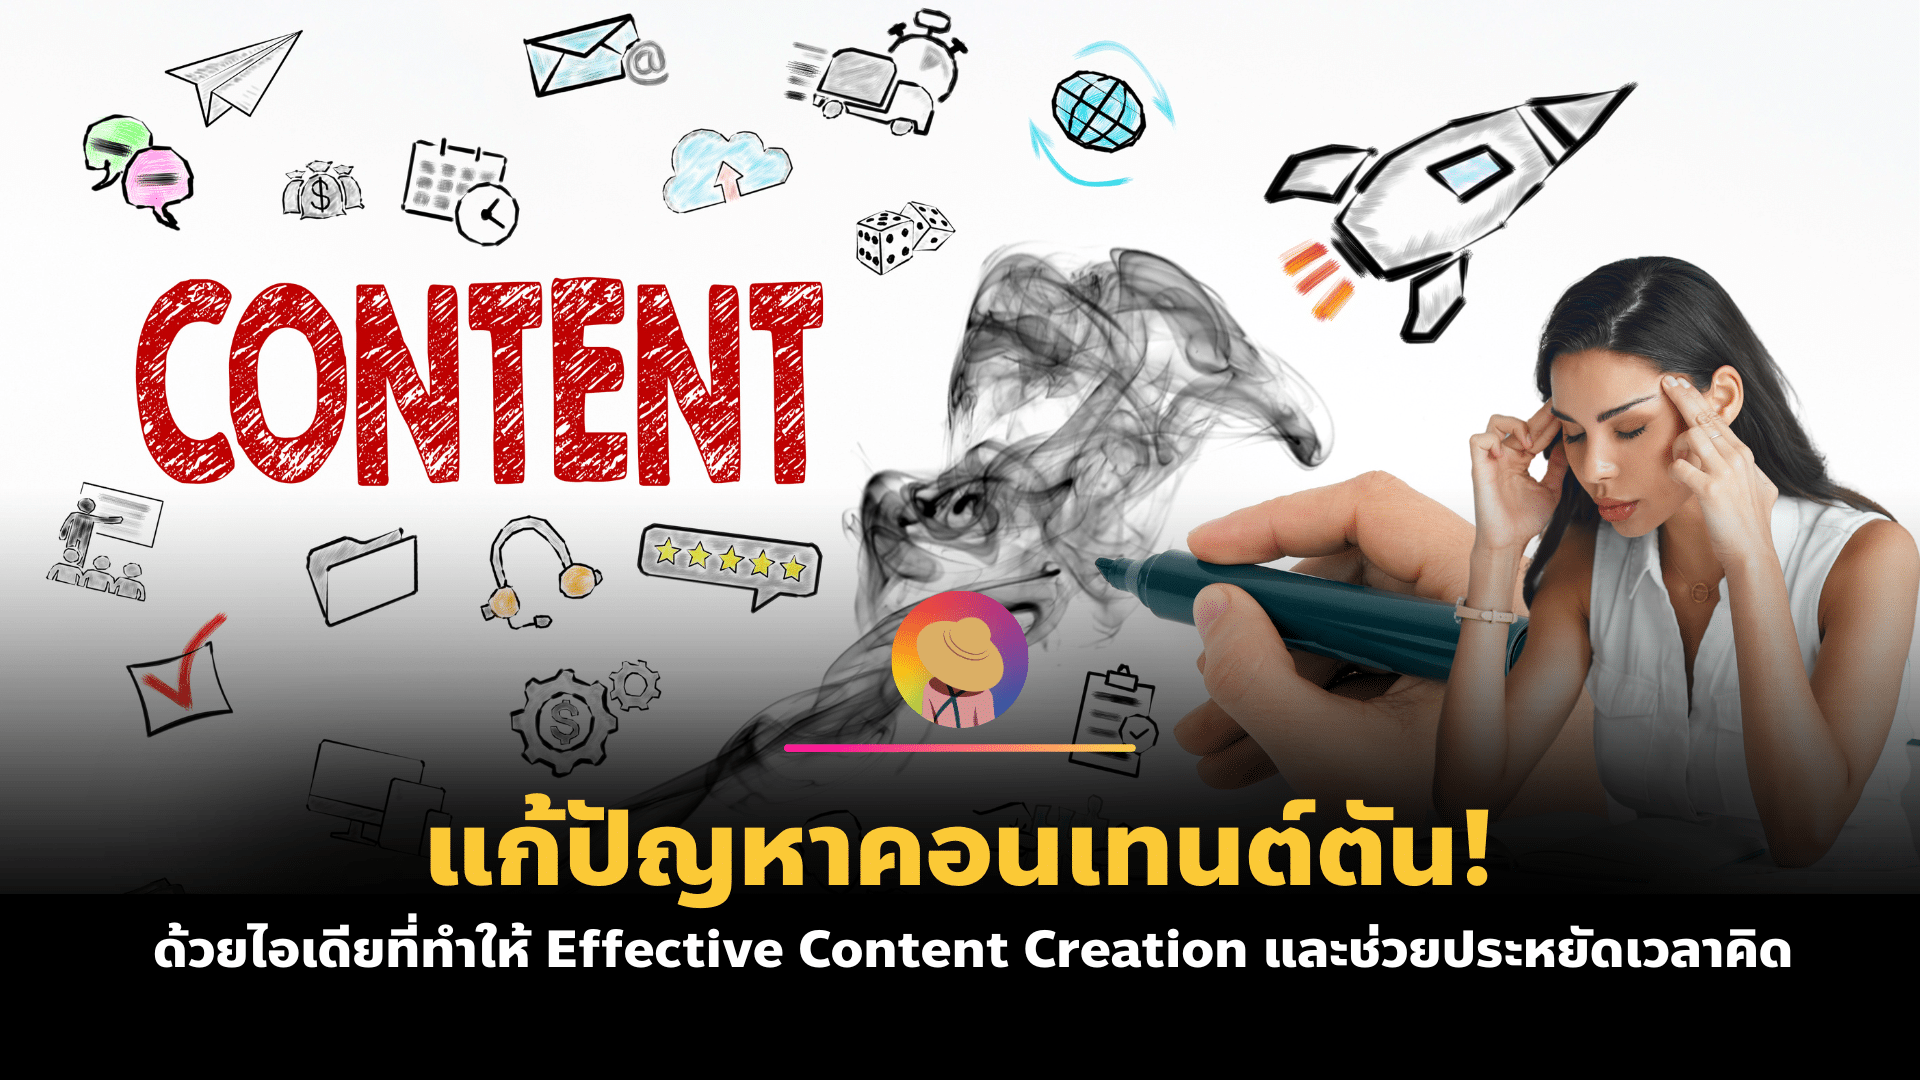 แก้ปัญหา คอนเทนต์ตัน! ด้วยไอเดียที่ทำให้ Effective Content Creation และช่วยประหยัดเวลาคิด